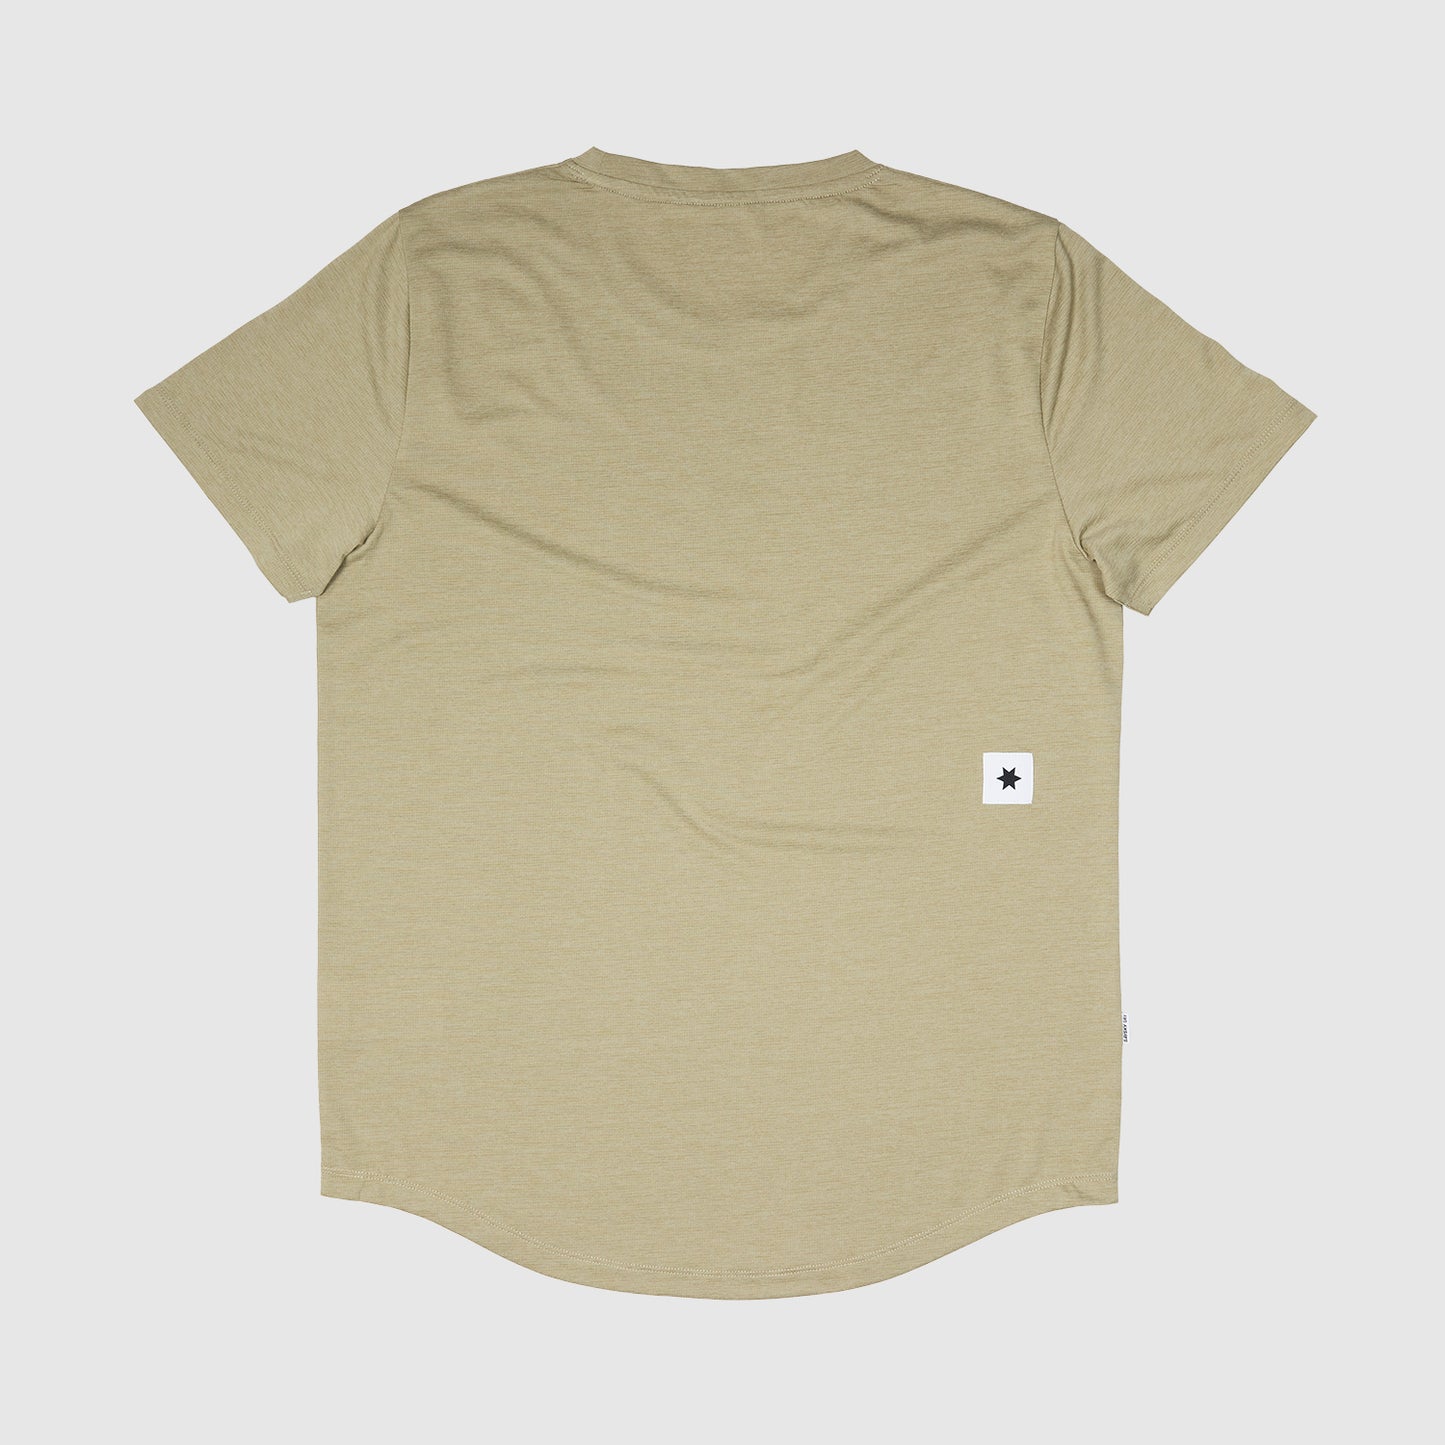 ランニングTシャツ JMRSS15c801 Combat Logo T-shirt - Beige [メンズ]